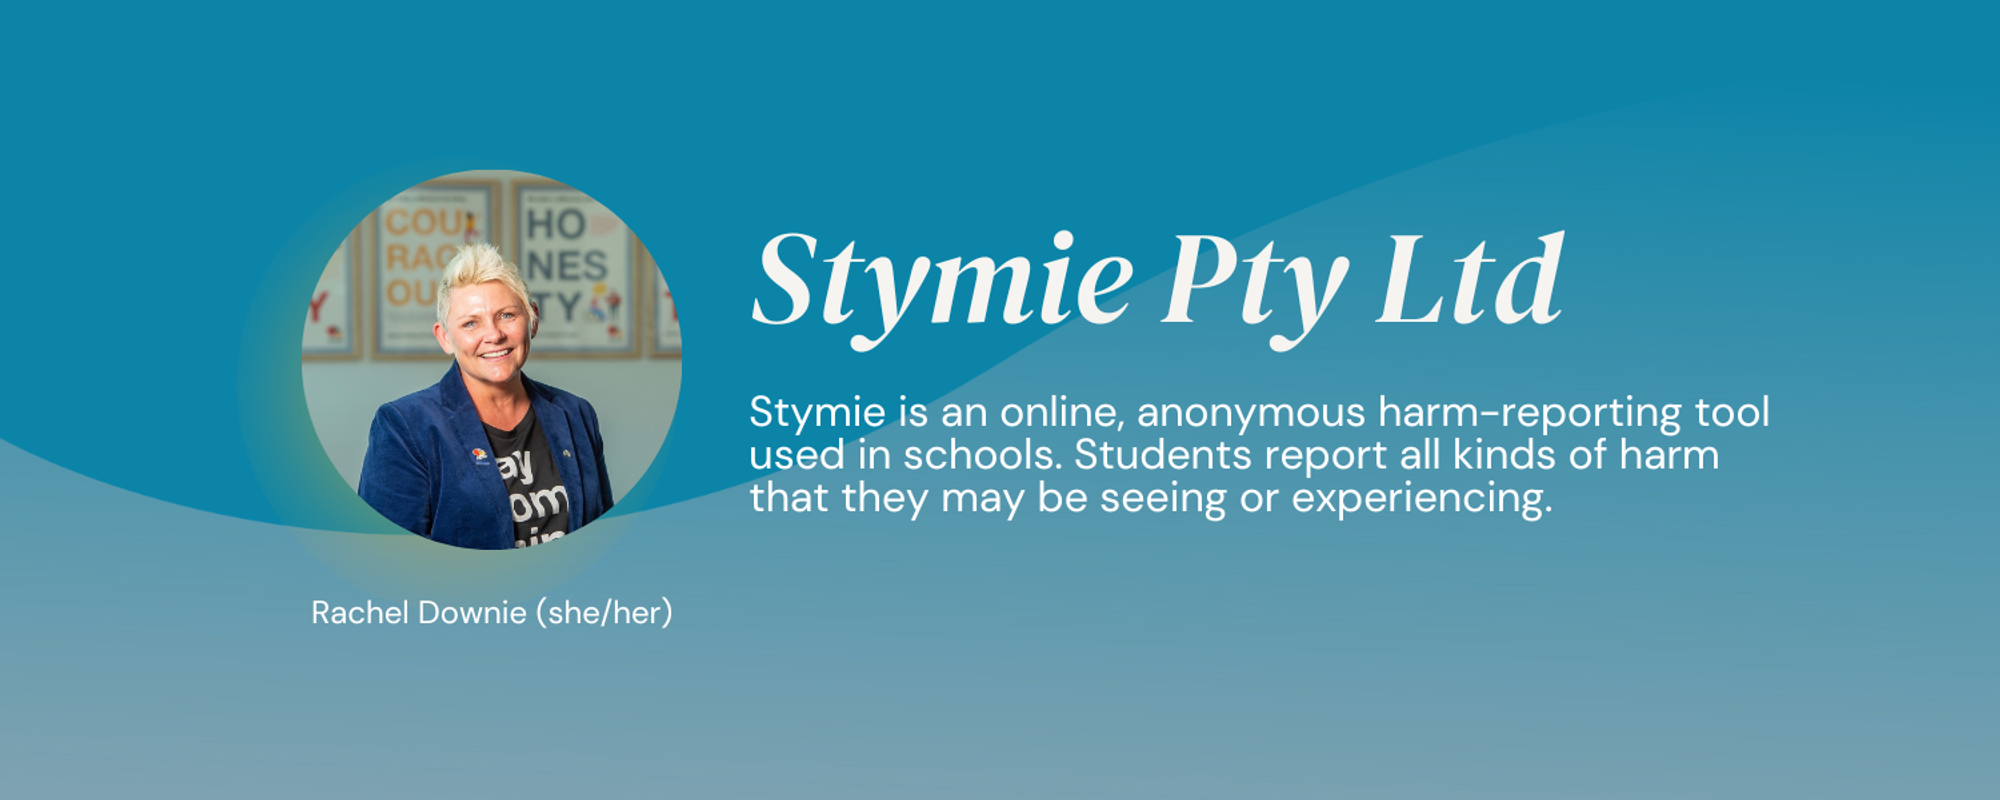 Stymie Pty Ltd